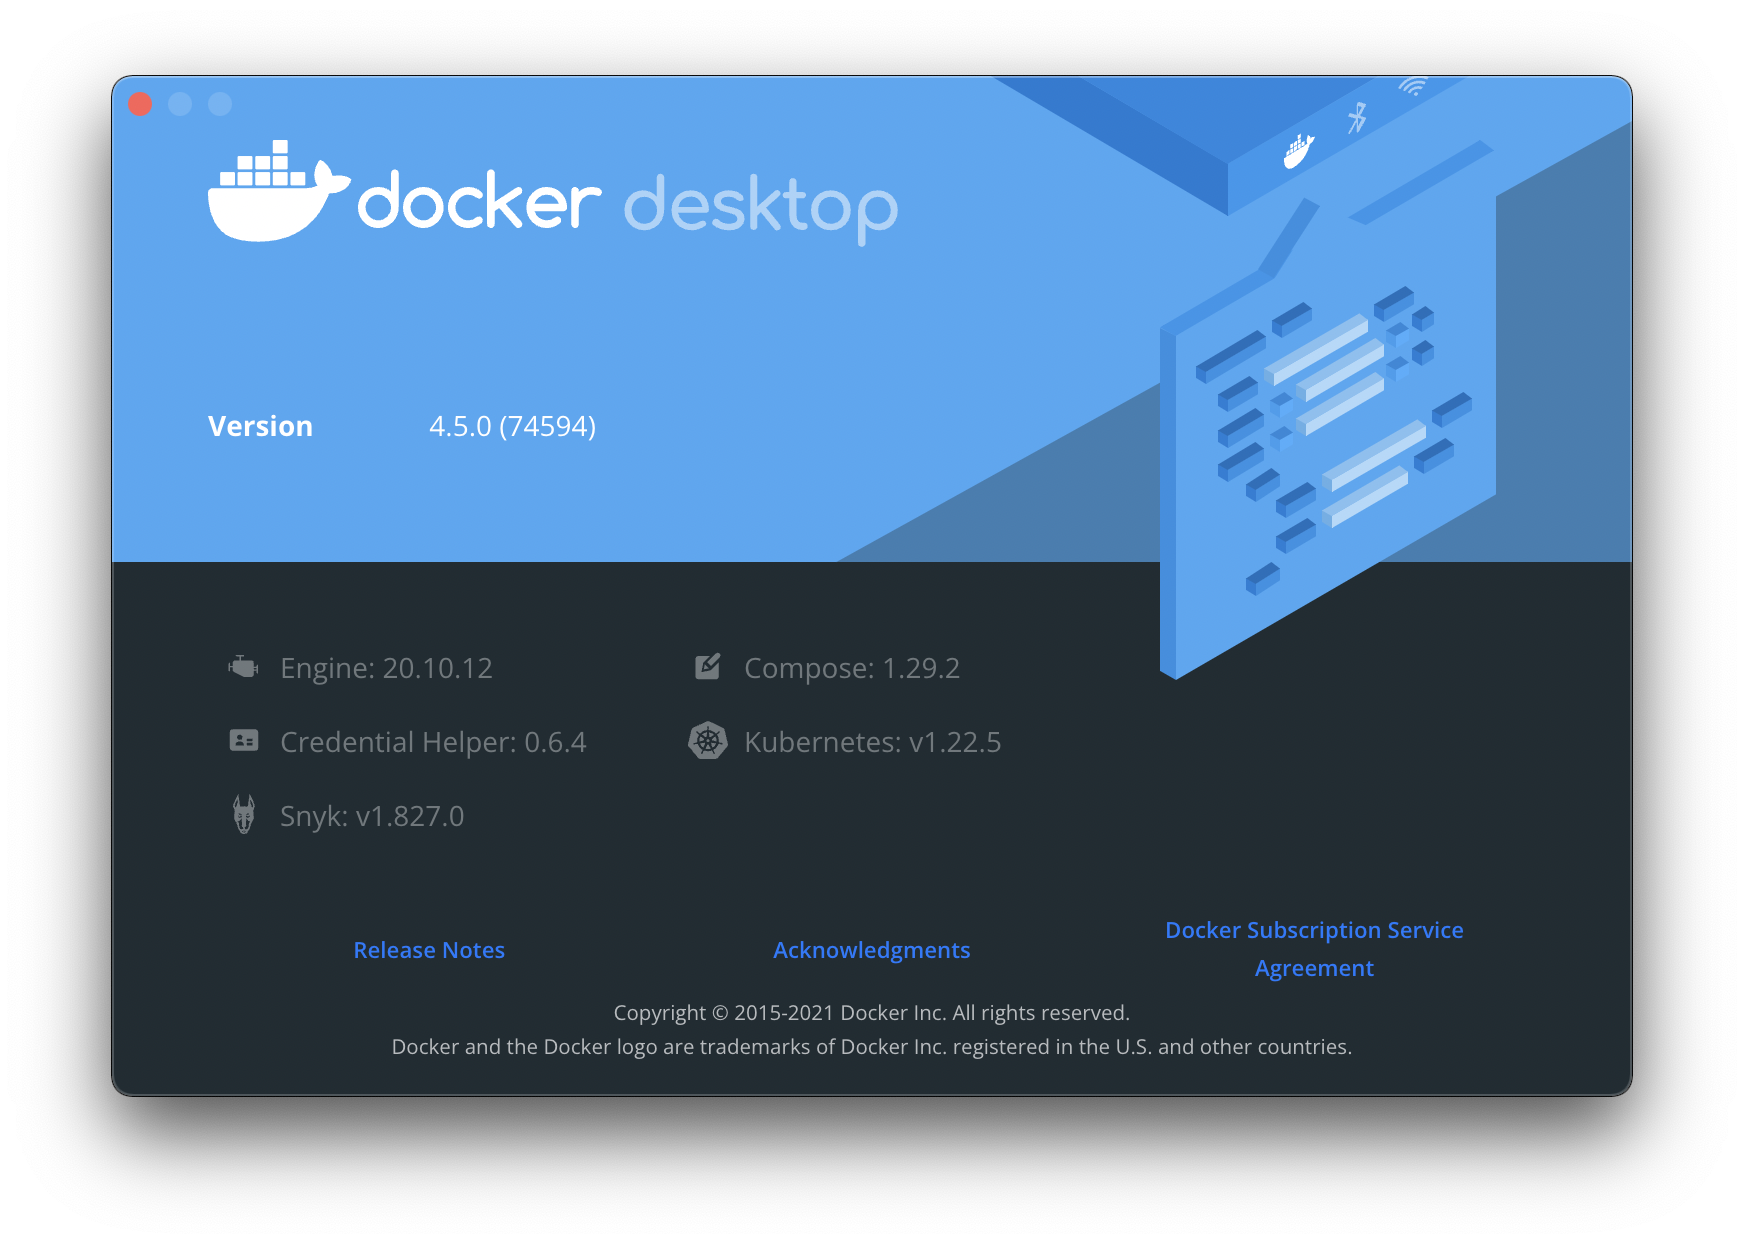 Docker desktop engine details